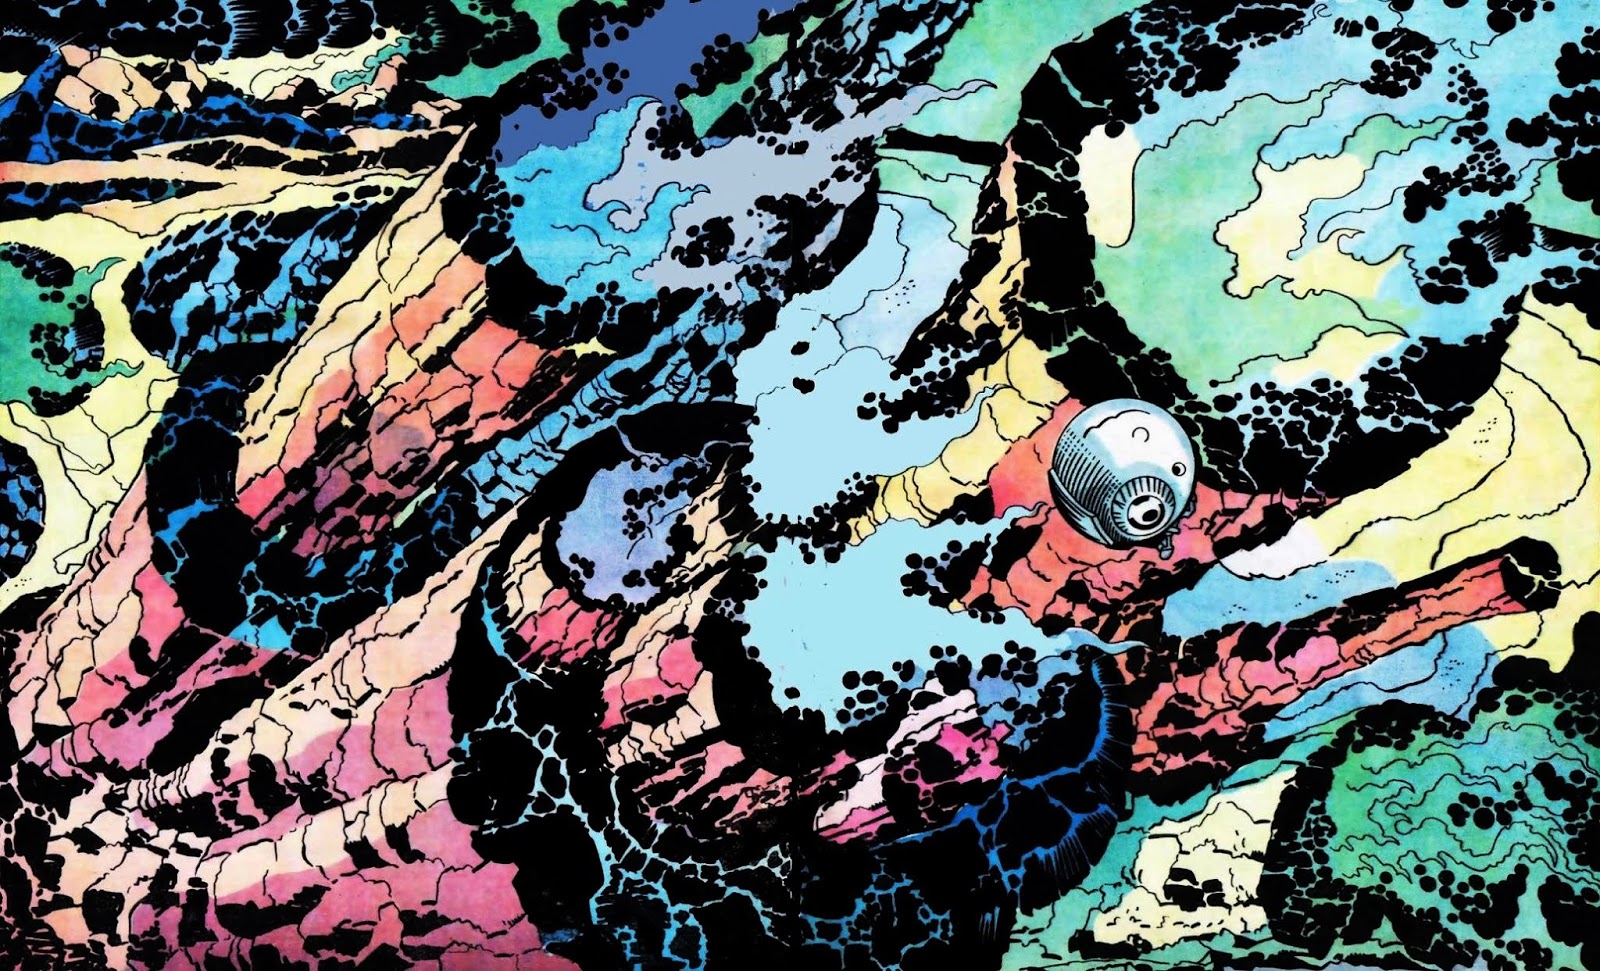 Cap'n's Comics: Moon Volcanoes by Jack Kirby.